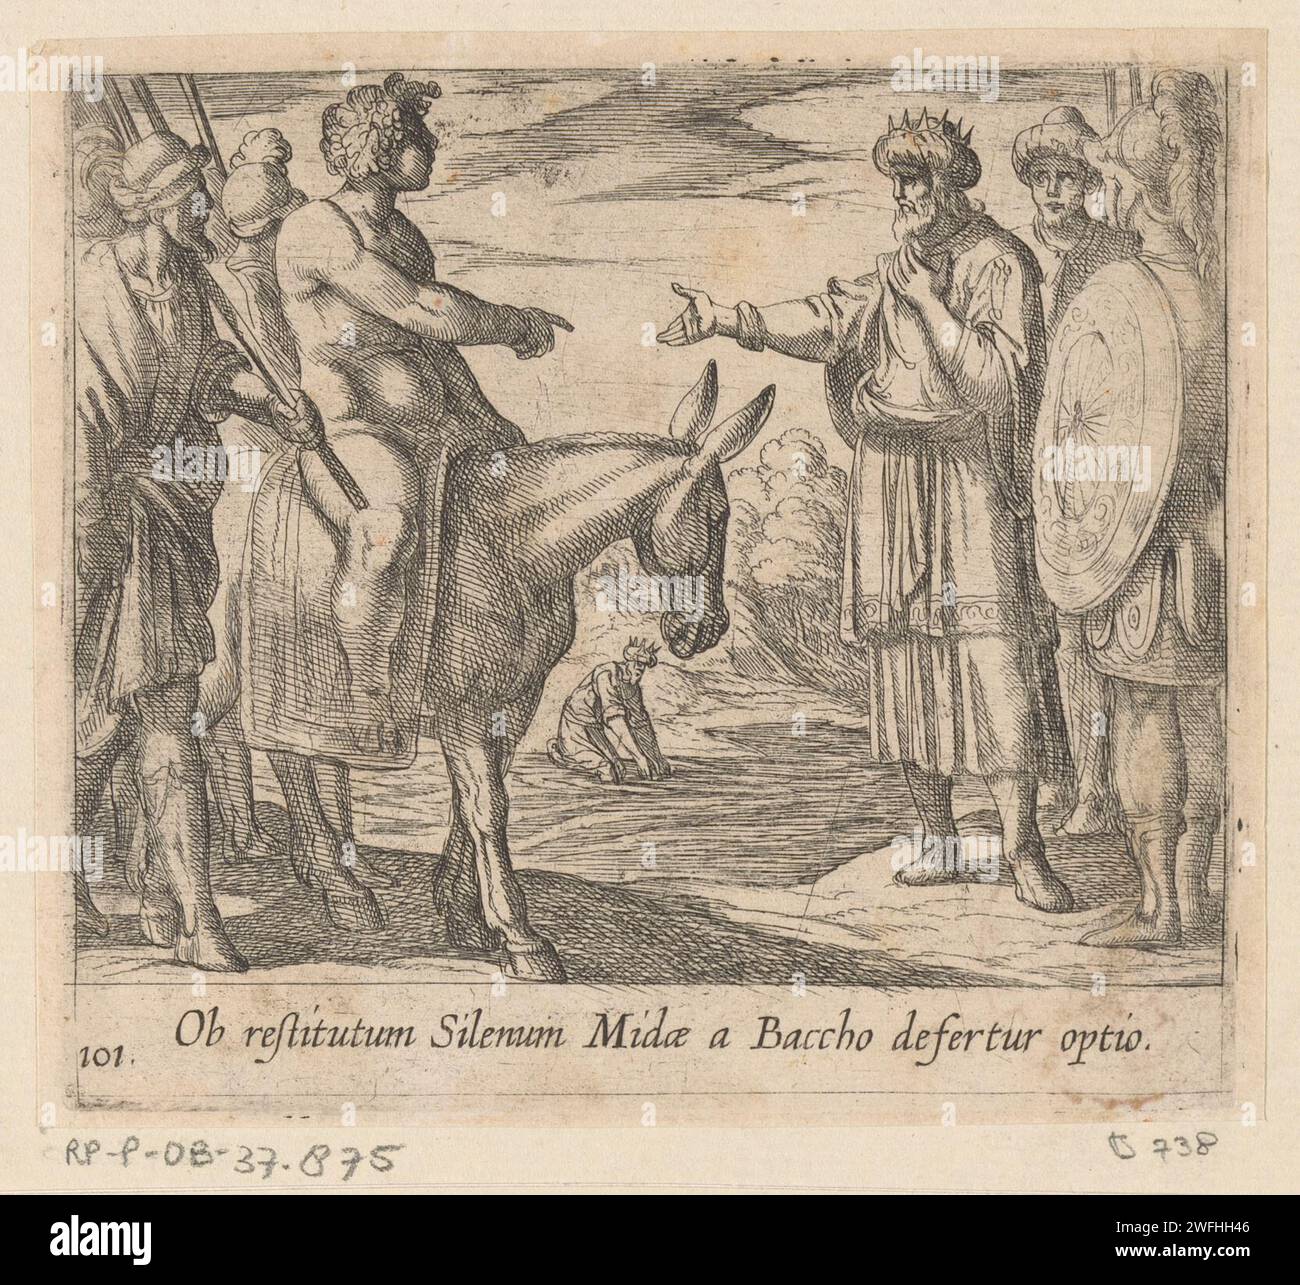 Bacchus autorise le vœu de Midas, Antonio Tempesta, 1606 print Bacchus est assis sur un âne et permet au roi Midas de faire un vœu. Titre en latin en STUDMARGE. Imprimeur : Italypublisher : Antwerp papier gravure Midas avant Bacchus Banque D'Images